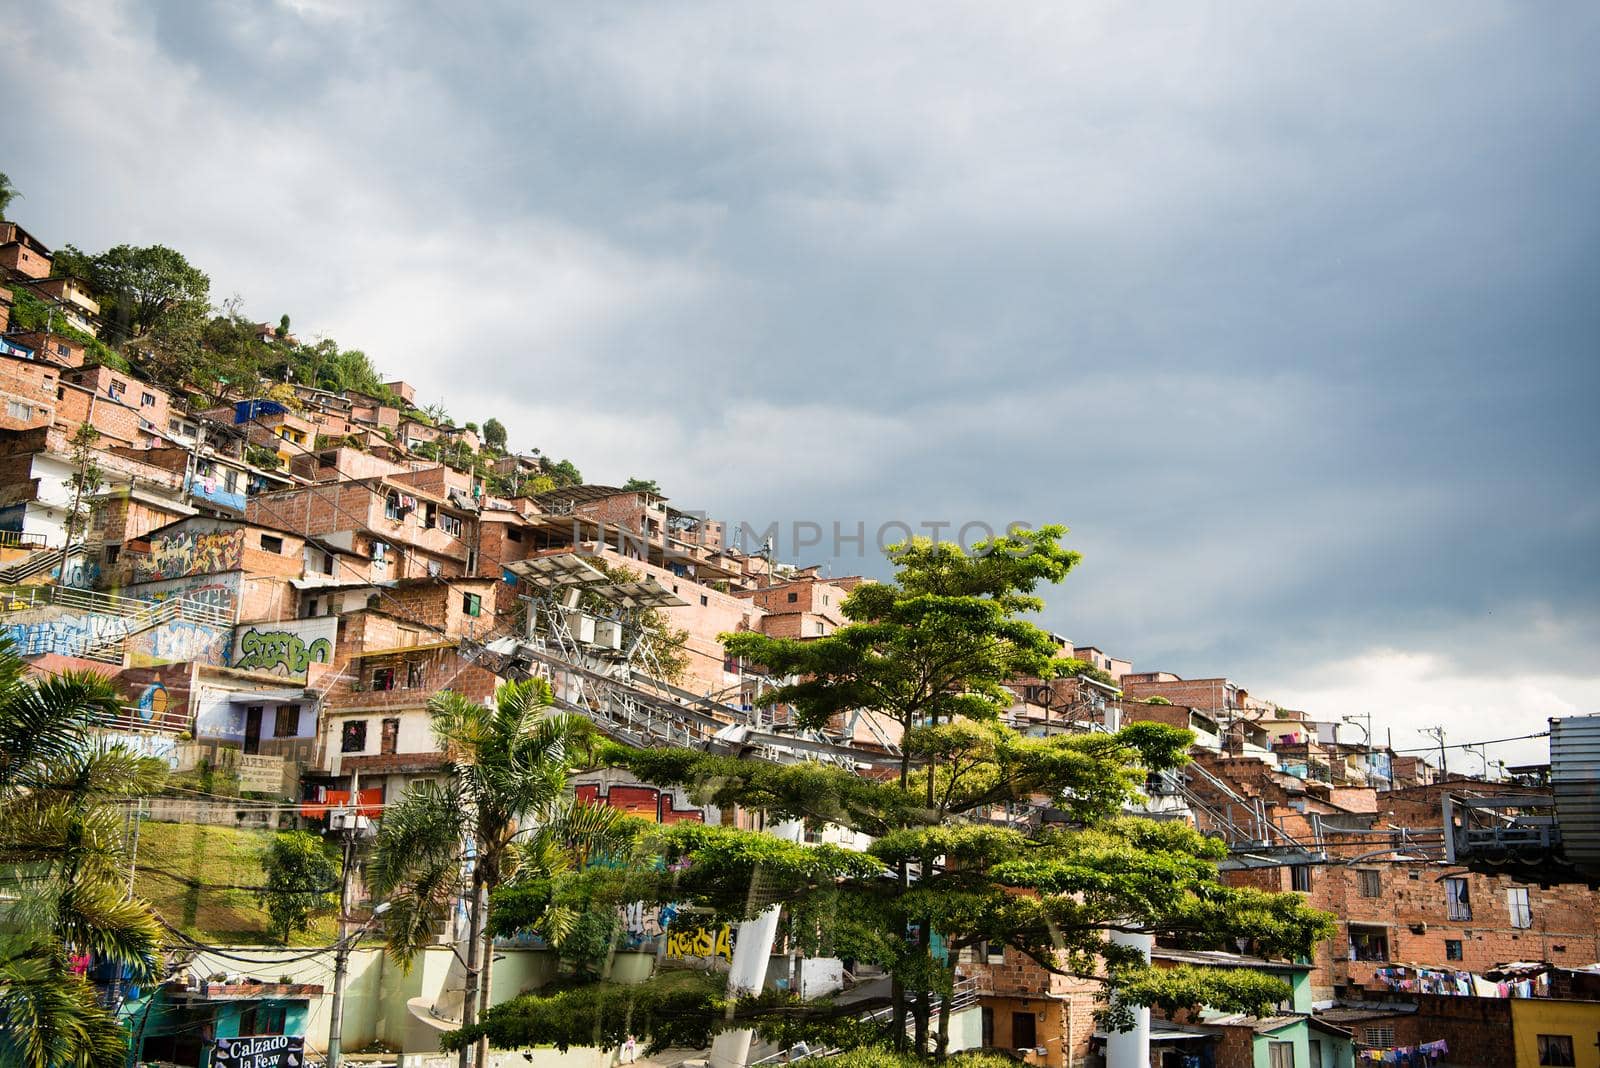 Village on steep hillside in Medellin, Colombia, South America. by jyurinko